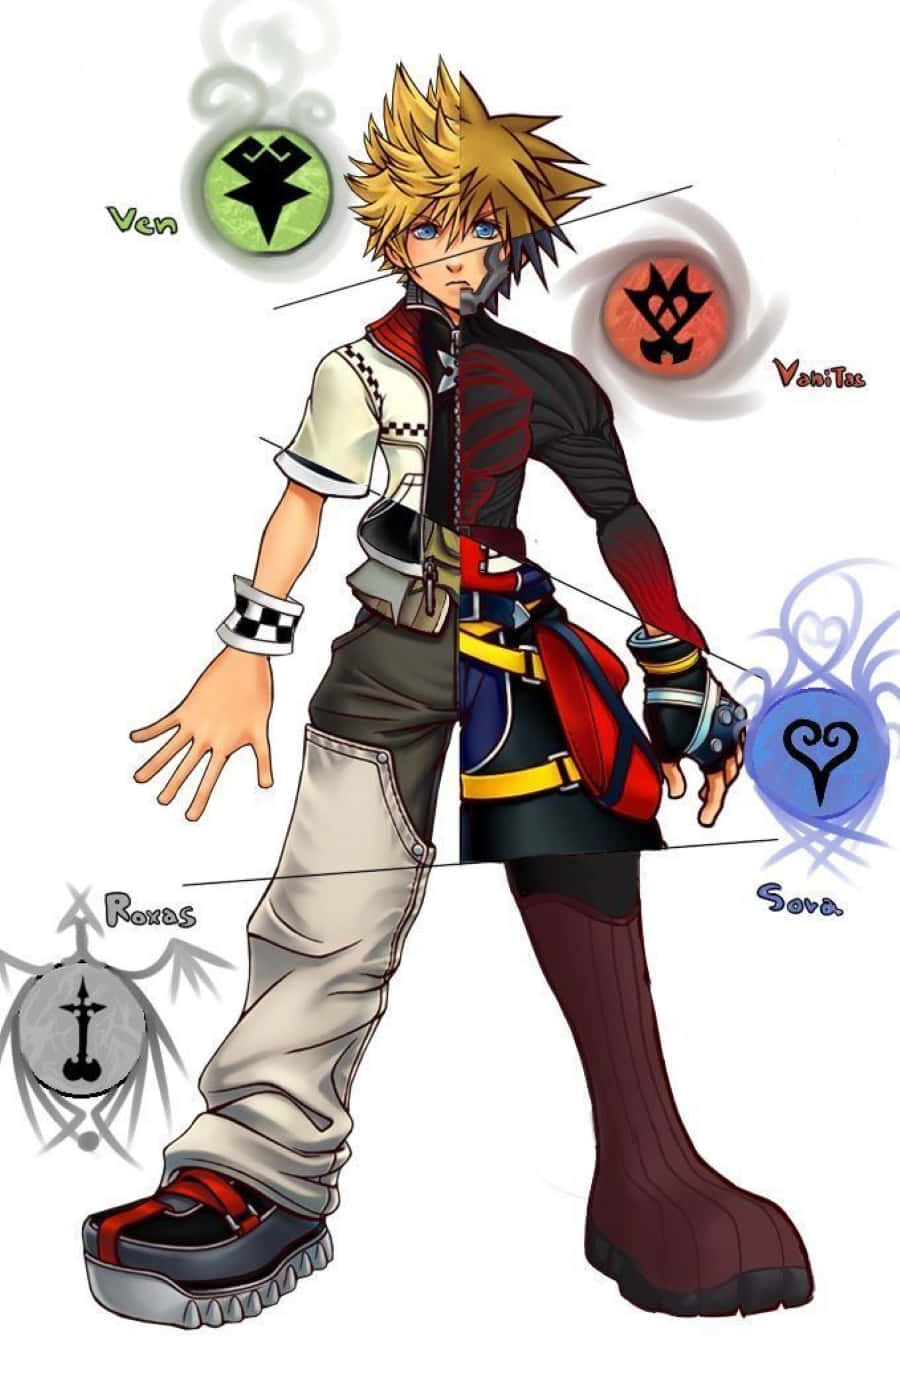 Ventus, the Keyblade wielder from Kingdom Hearts Wallpaper